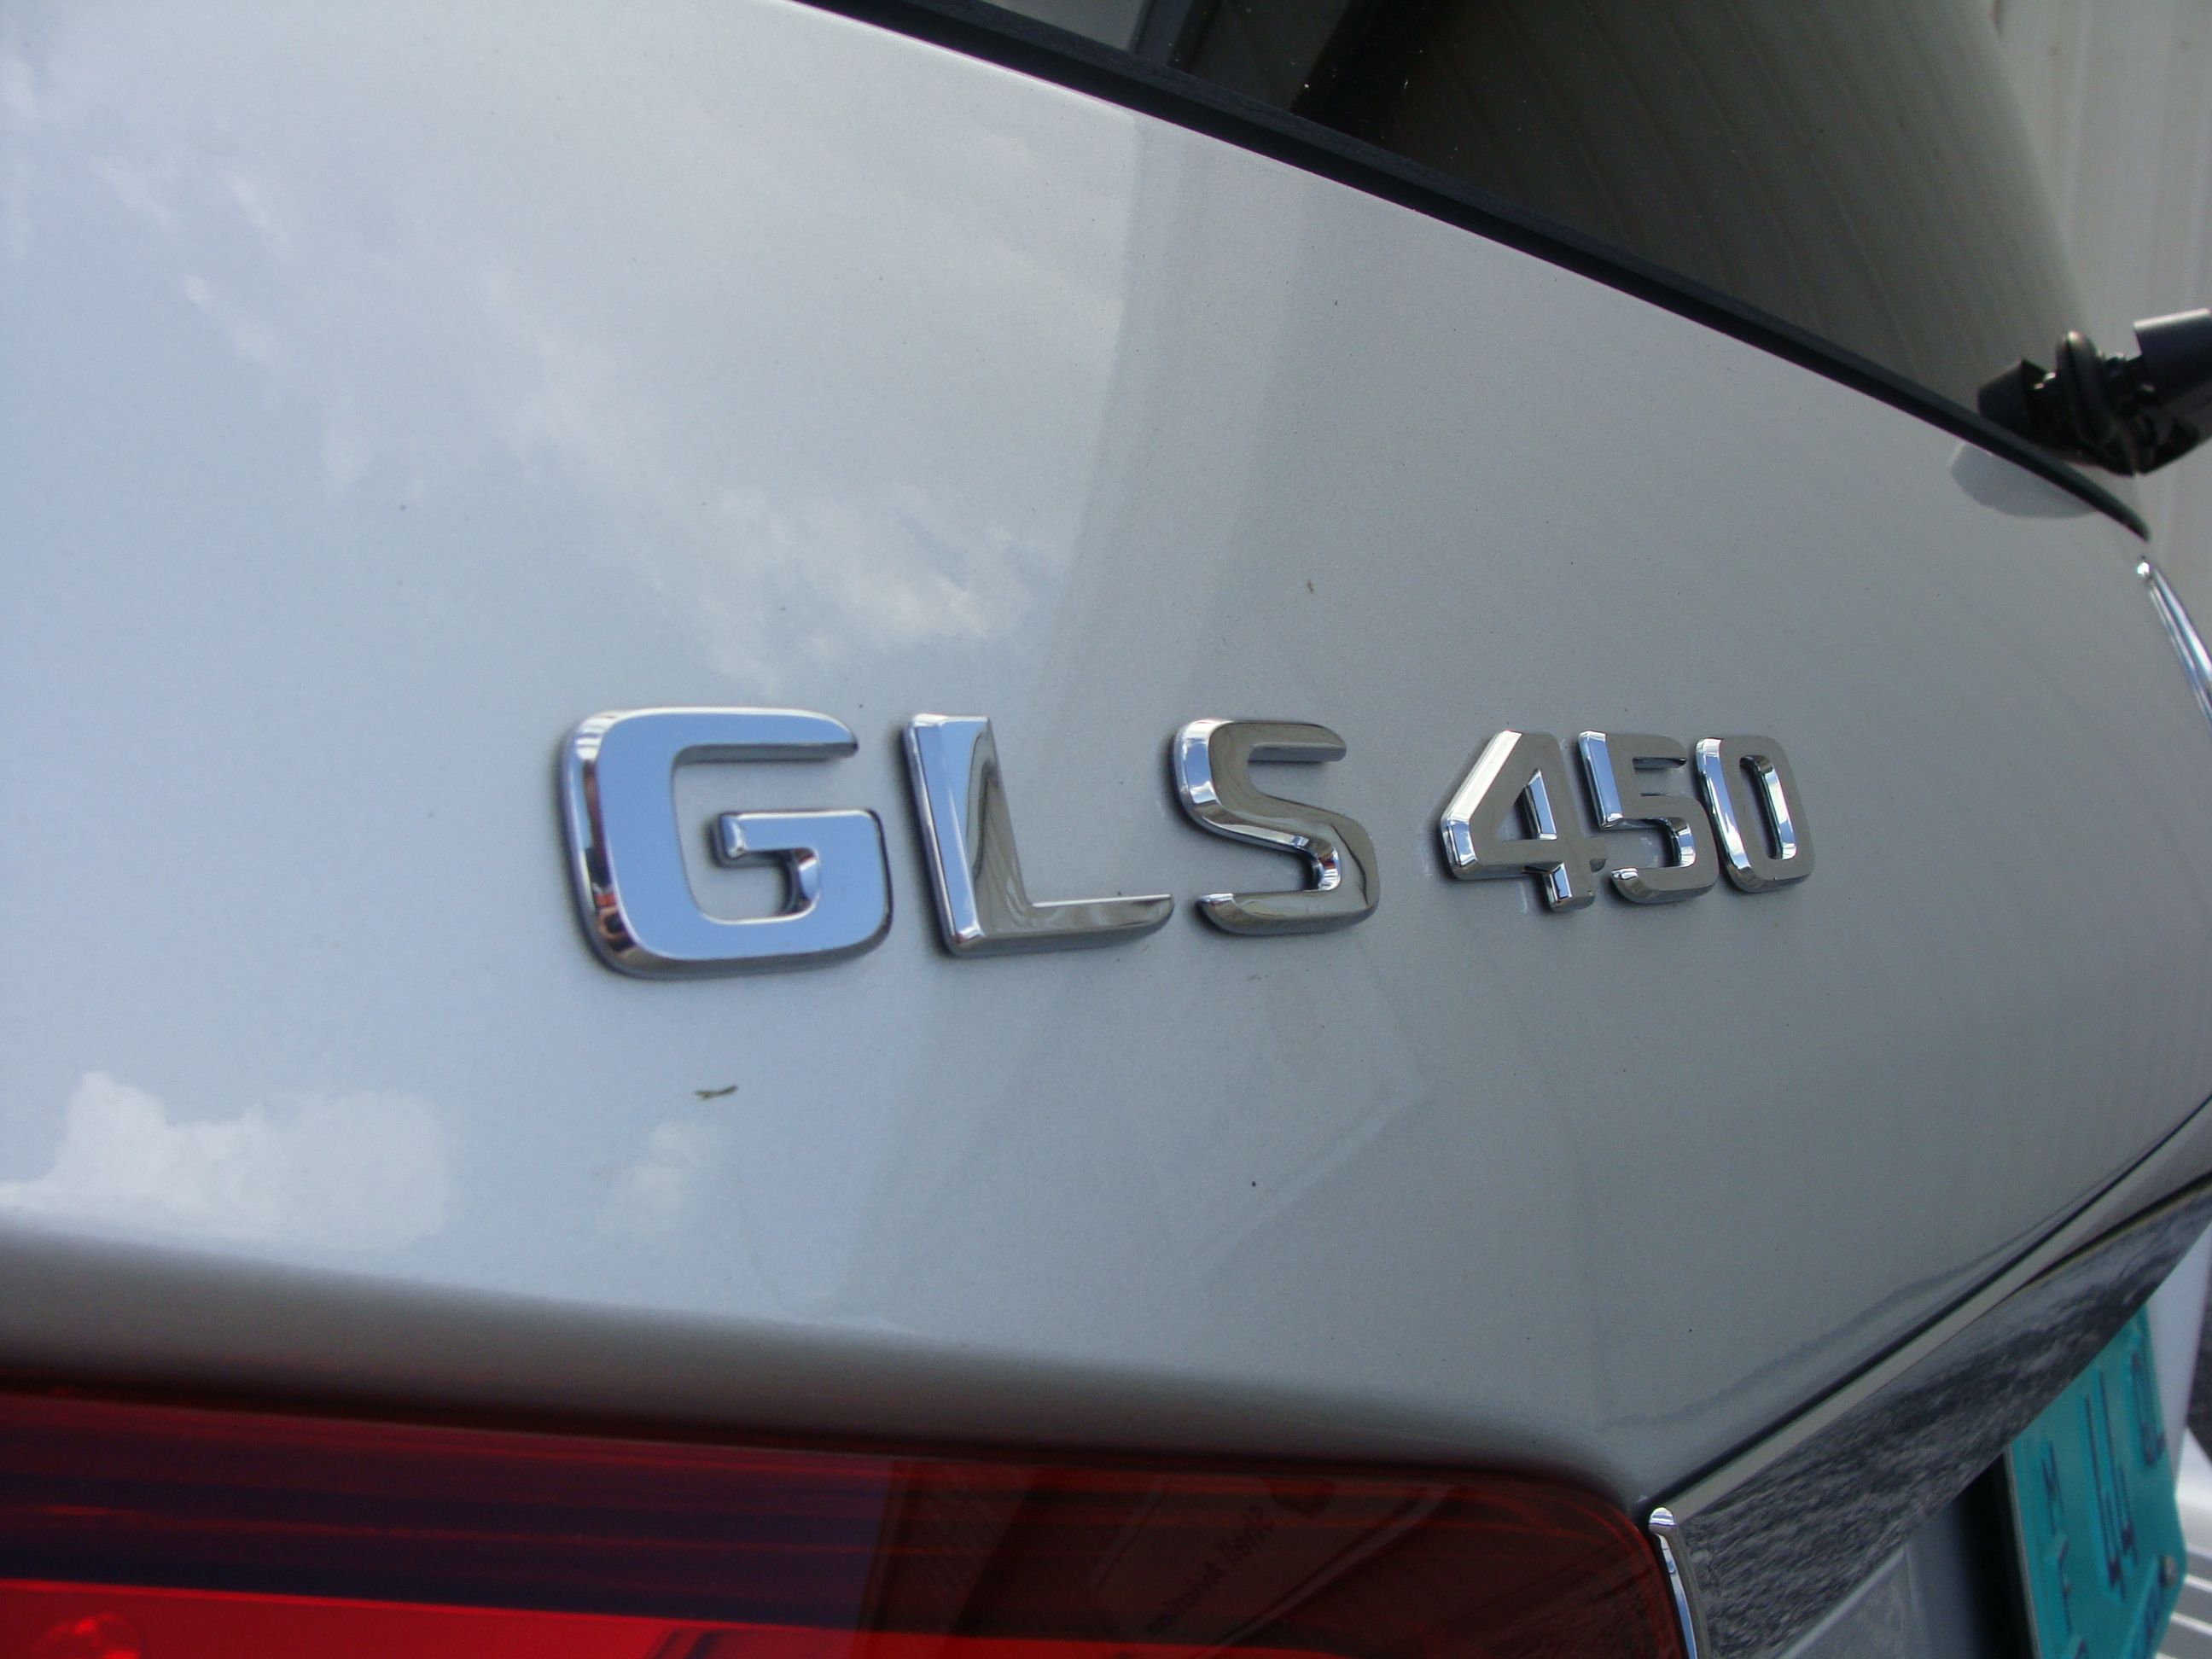 2017 Mercedes-Benz GLS450 - Driven